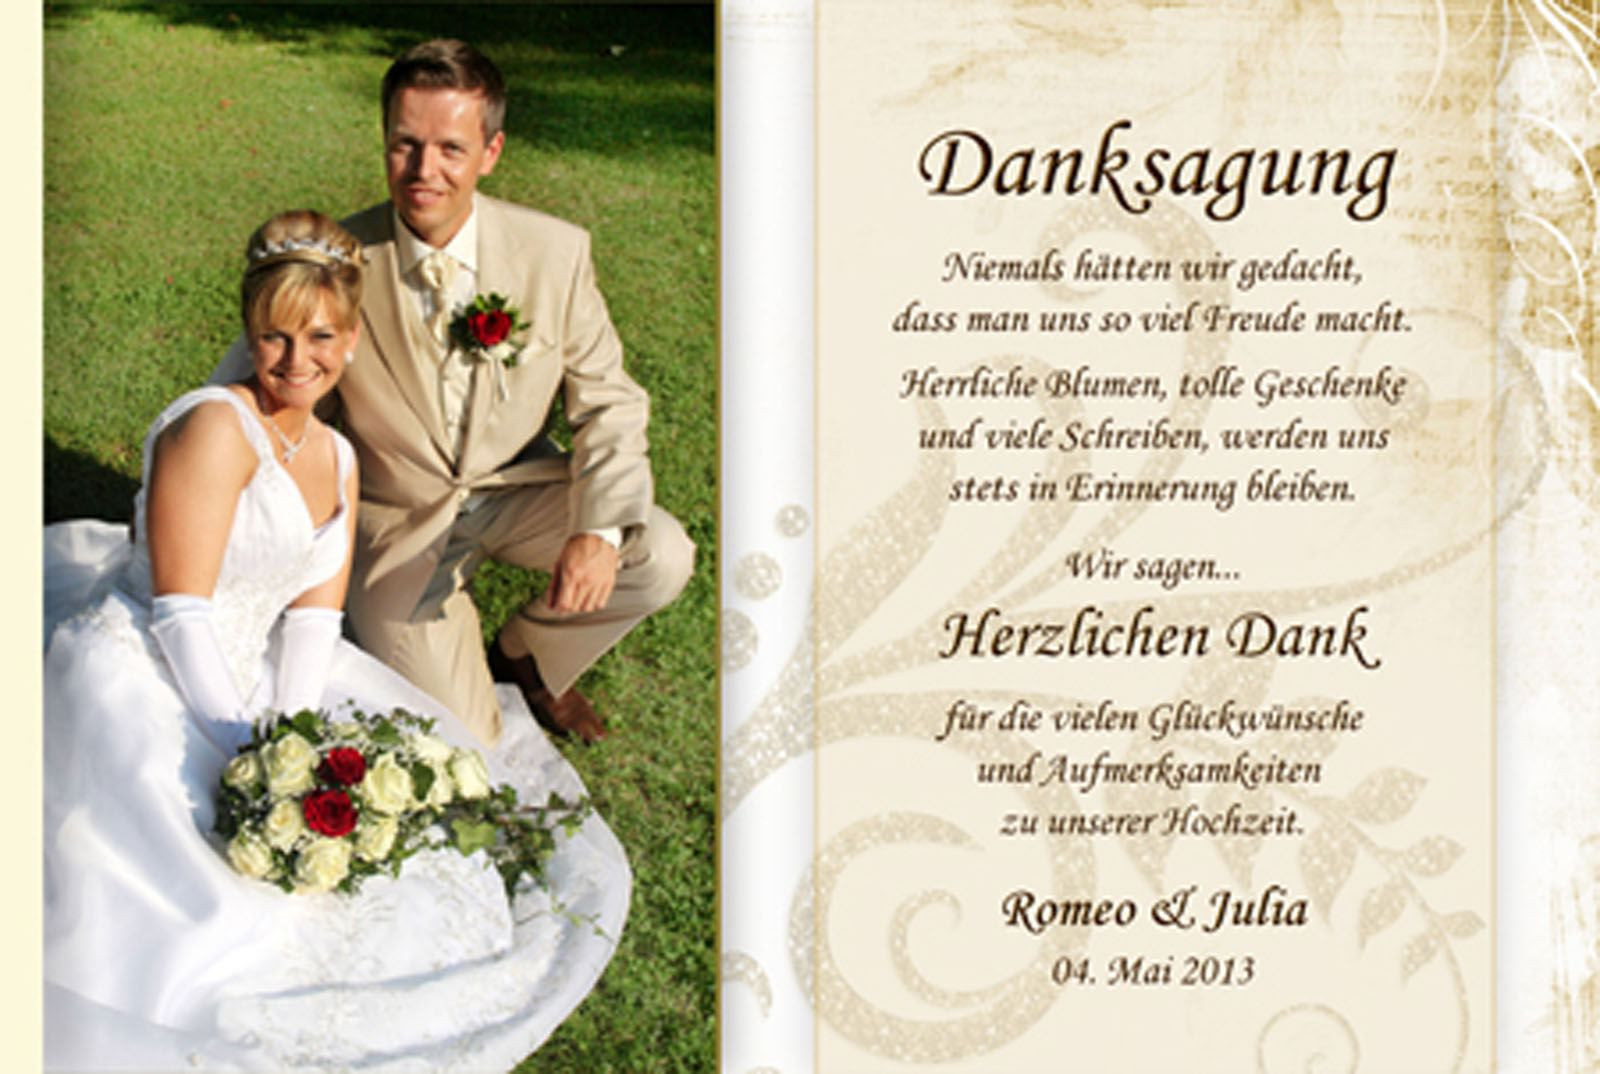 Danksagung Hochzeit Spruch
 dankeskarten hochzeit dankeskarte hochzeit text